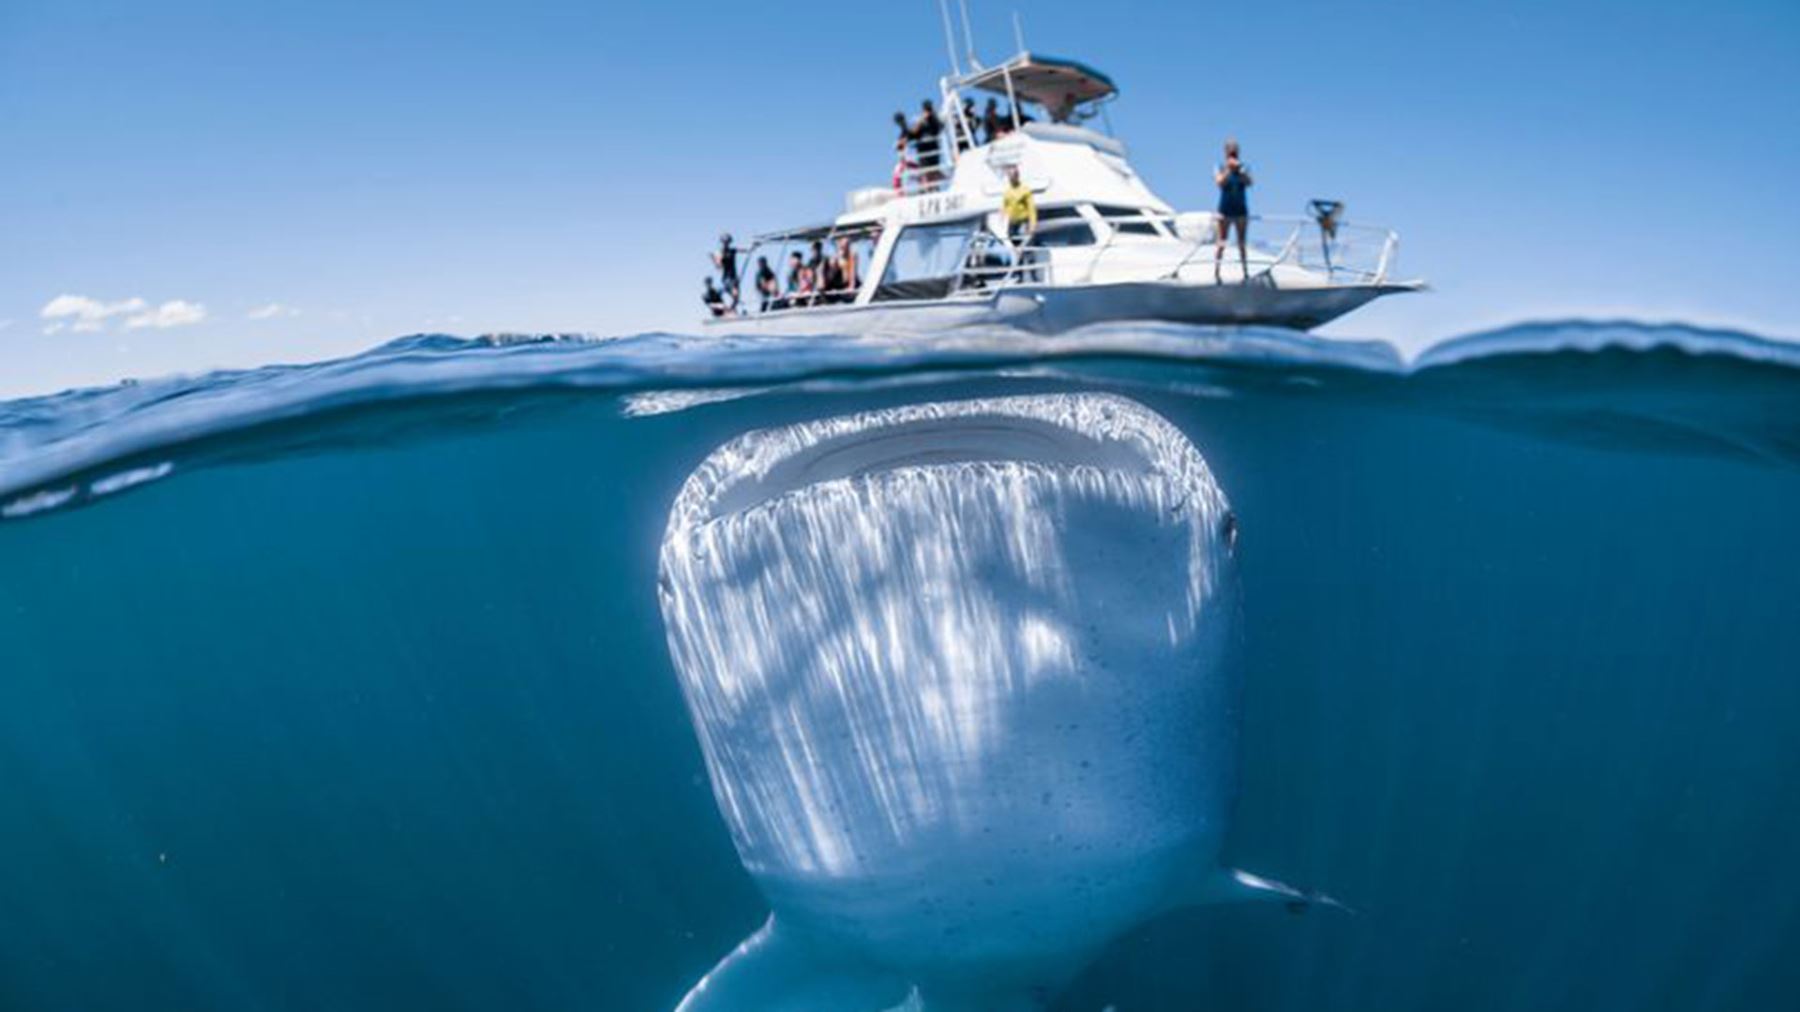 Tiburón ballena. Foto: Internet/Medios.